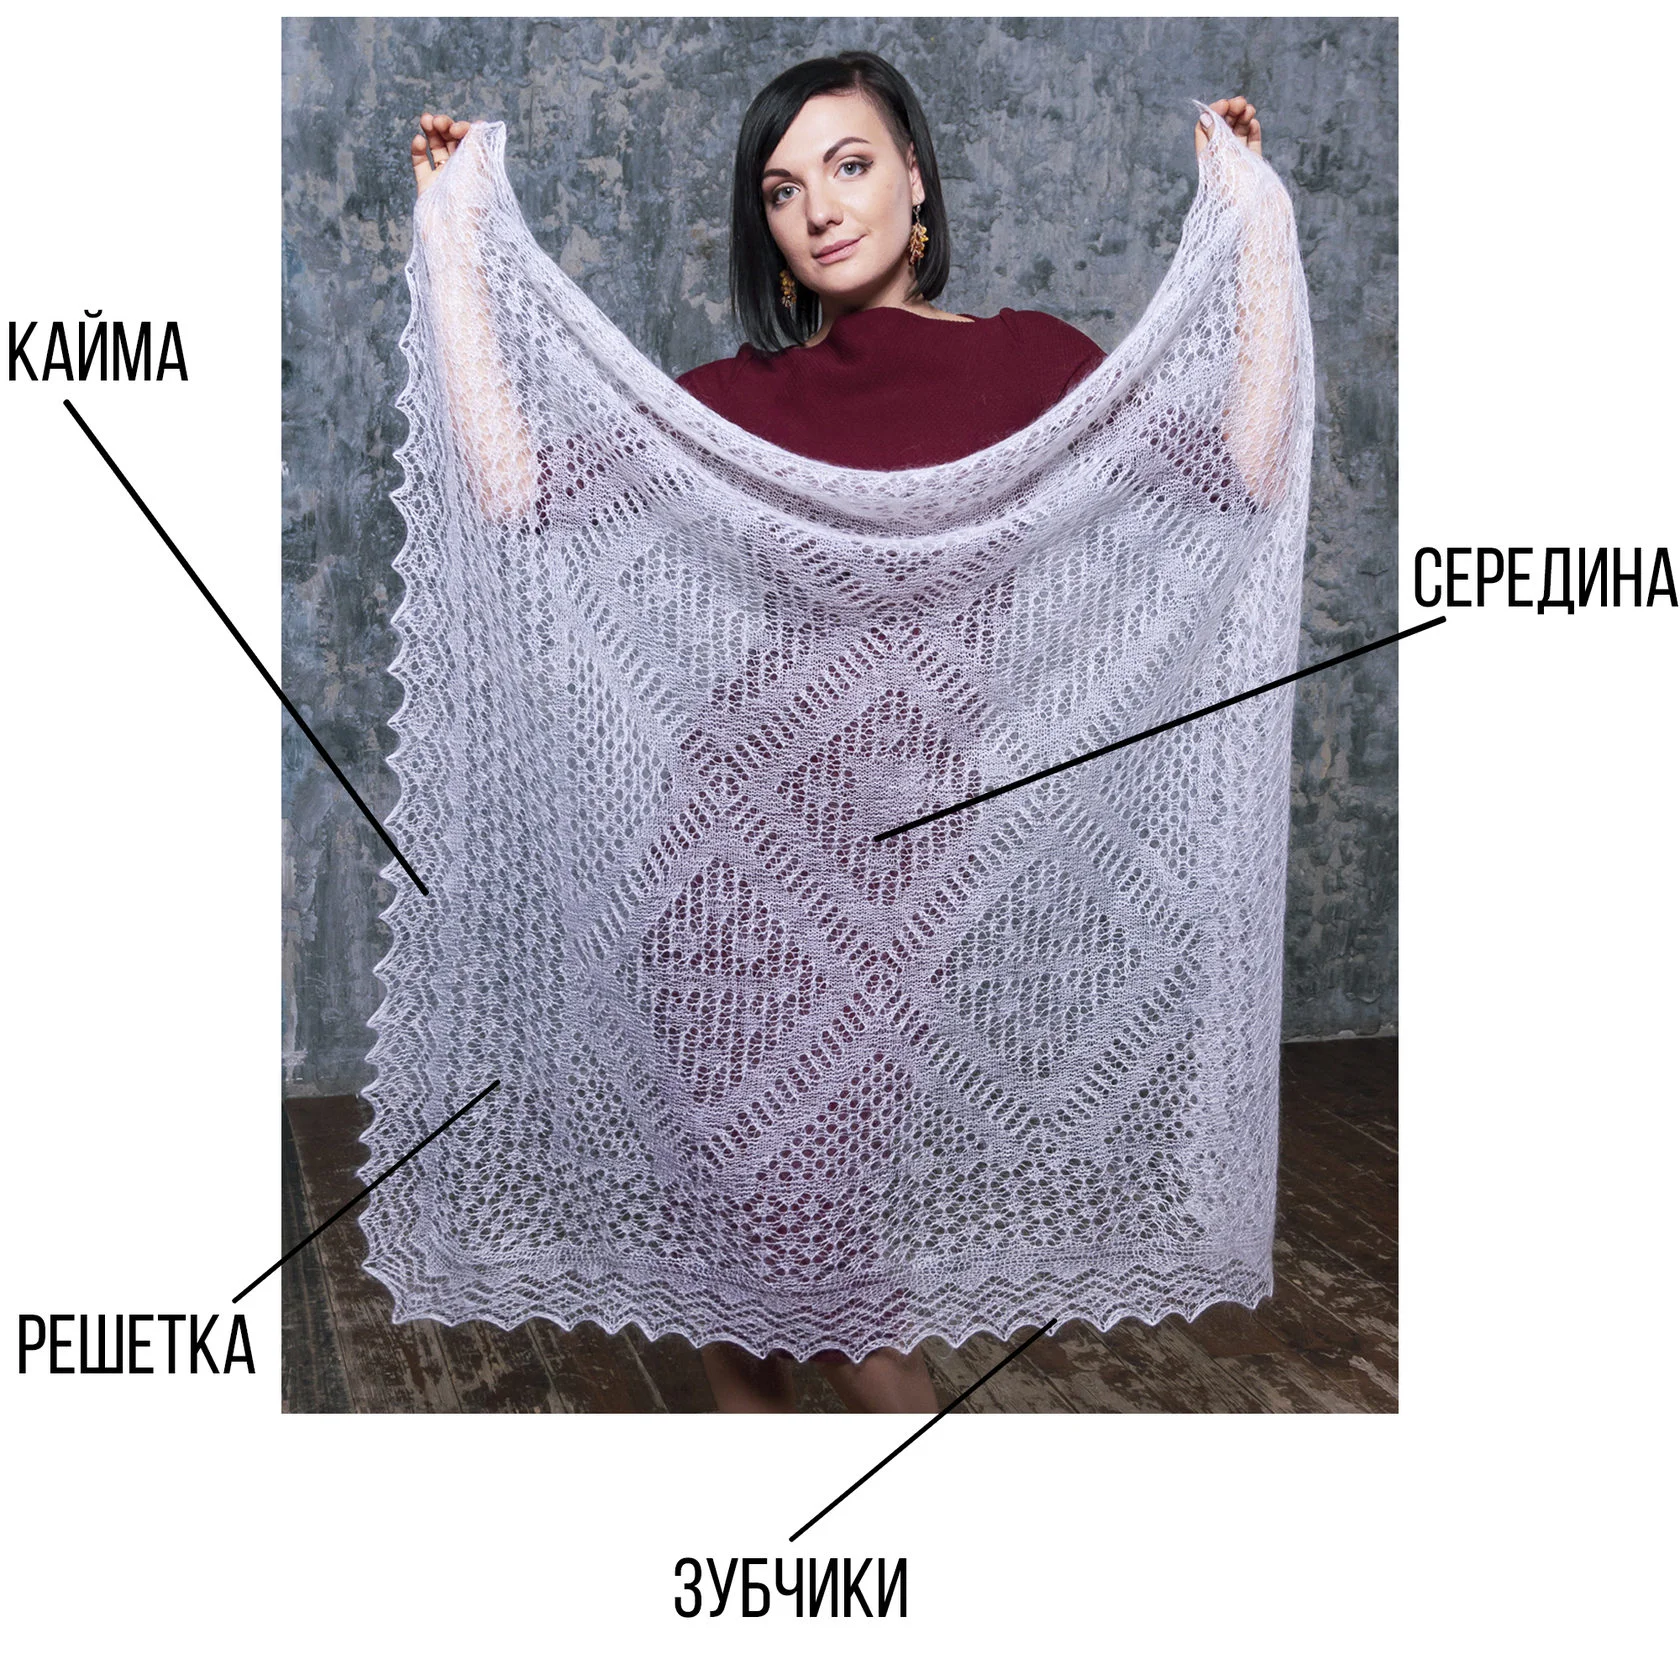 Схема вязания оренбургского пухового платка | Схемы вязания, Вязание, Вязаное рукоделие